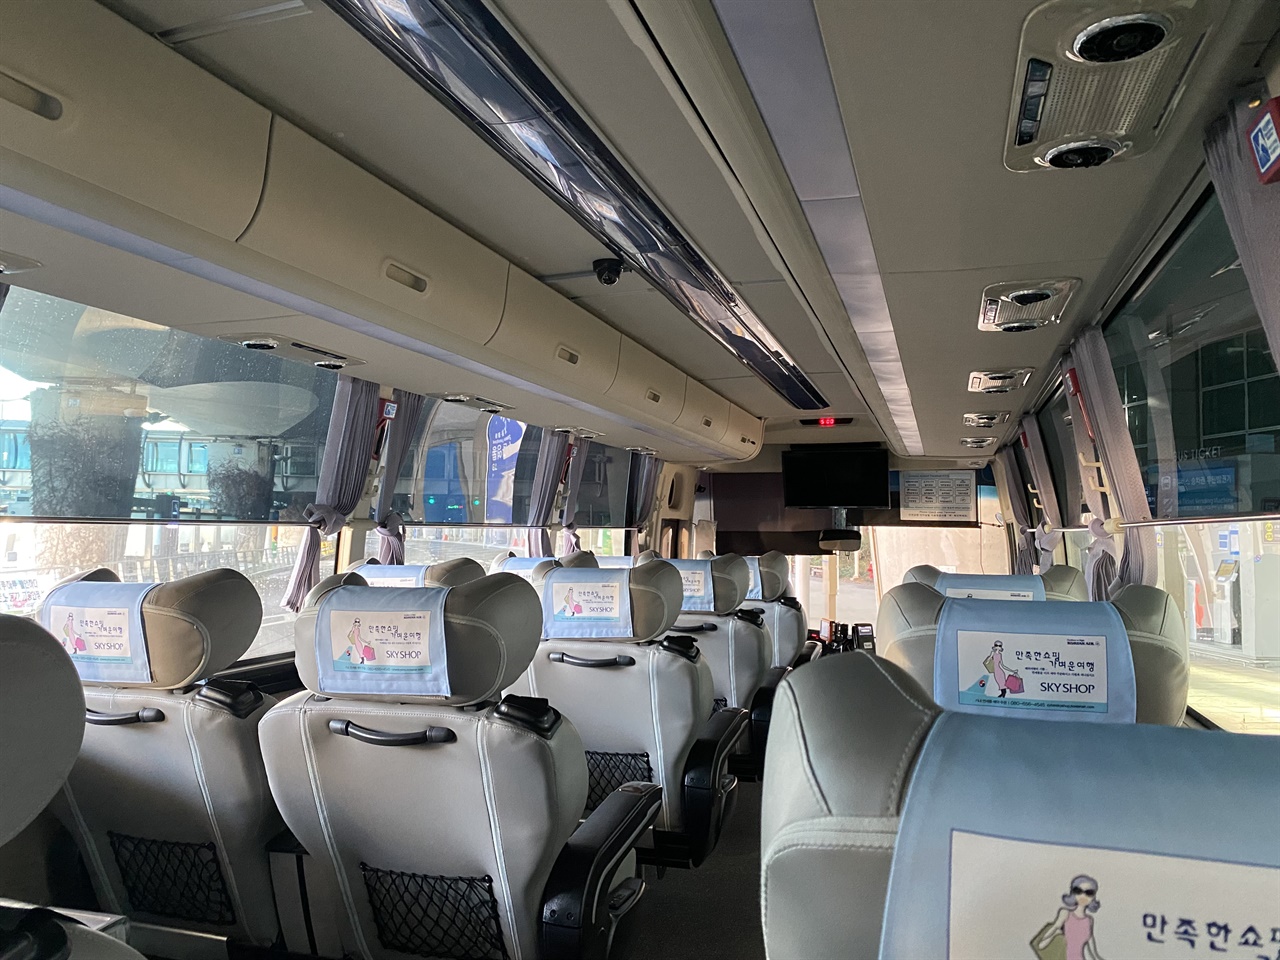 유일하게 운행중인 김포공항 KAL 리무진 버스가 텅 비어있다. 2터미널을 경유한 이 버스는 2터미널에서 승무원 3명을 더 태우고 출발했다. 김포공항까지 이동한 승객은 나와 승무원까지 합쳐 고작 4명에 불과했다.